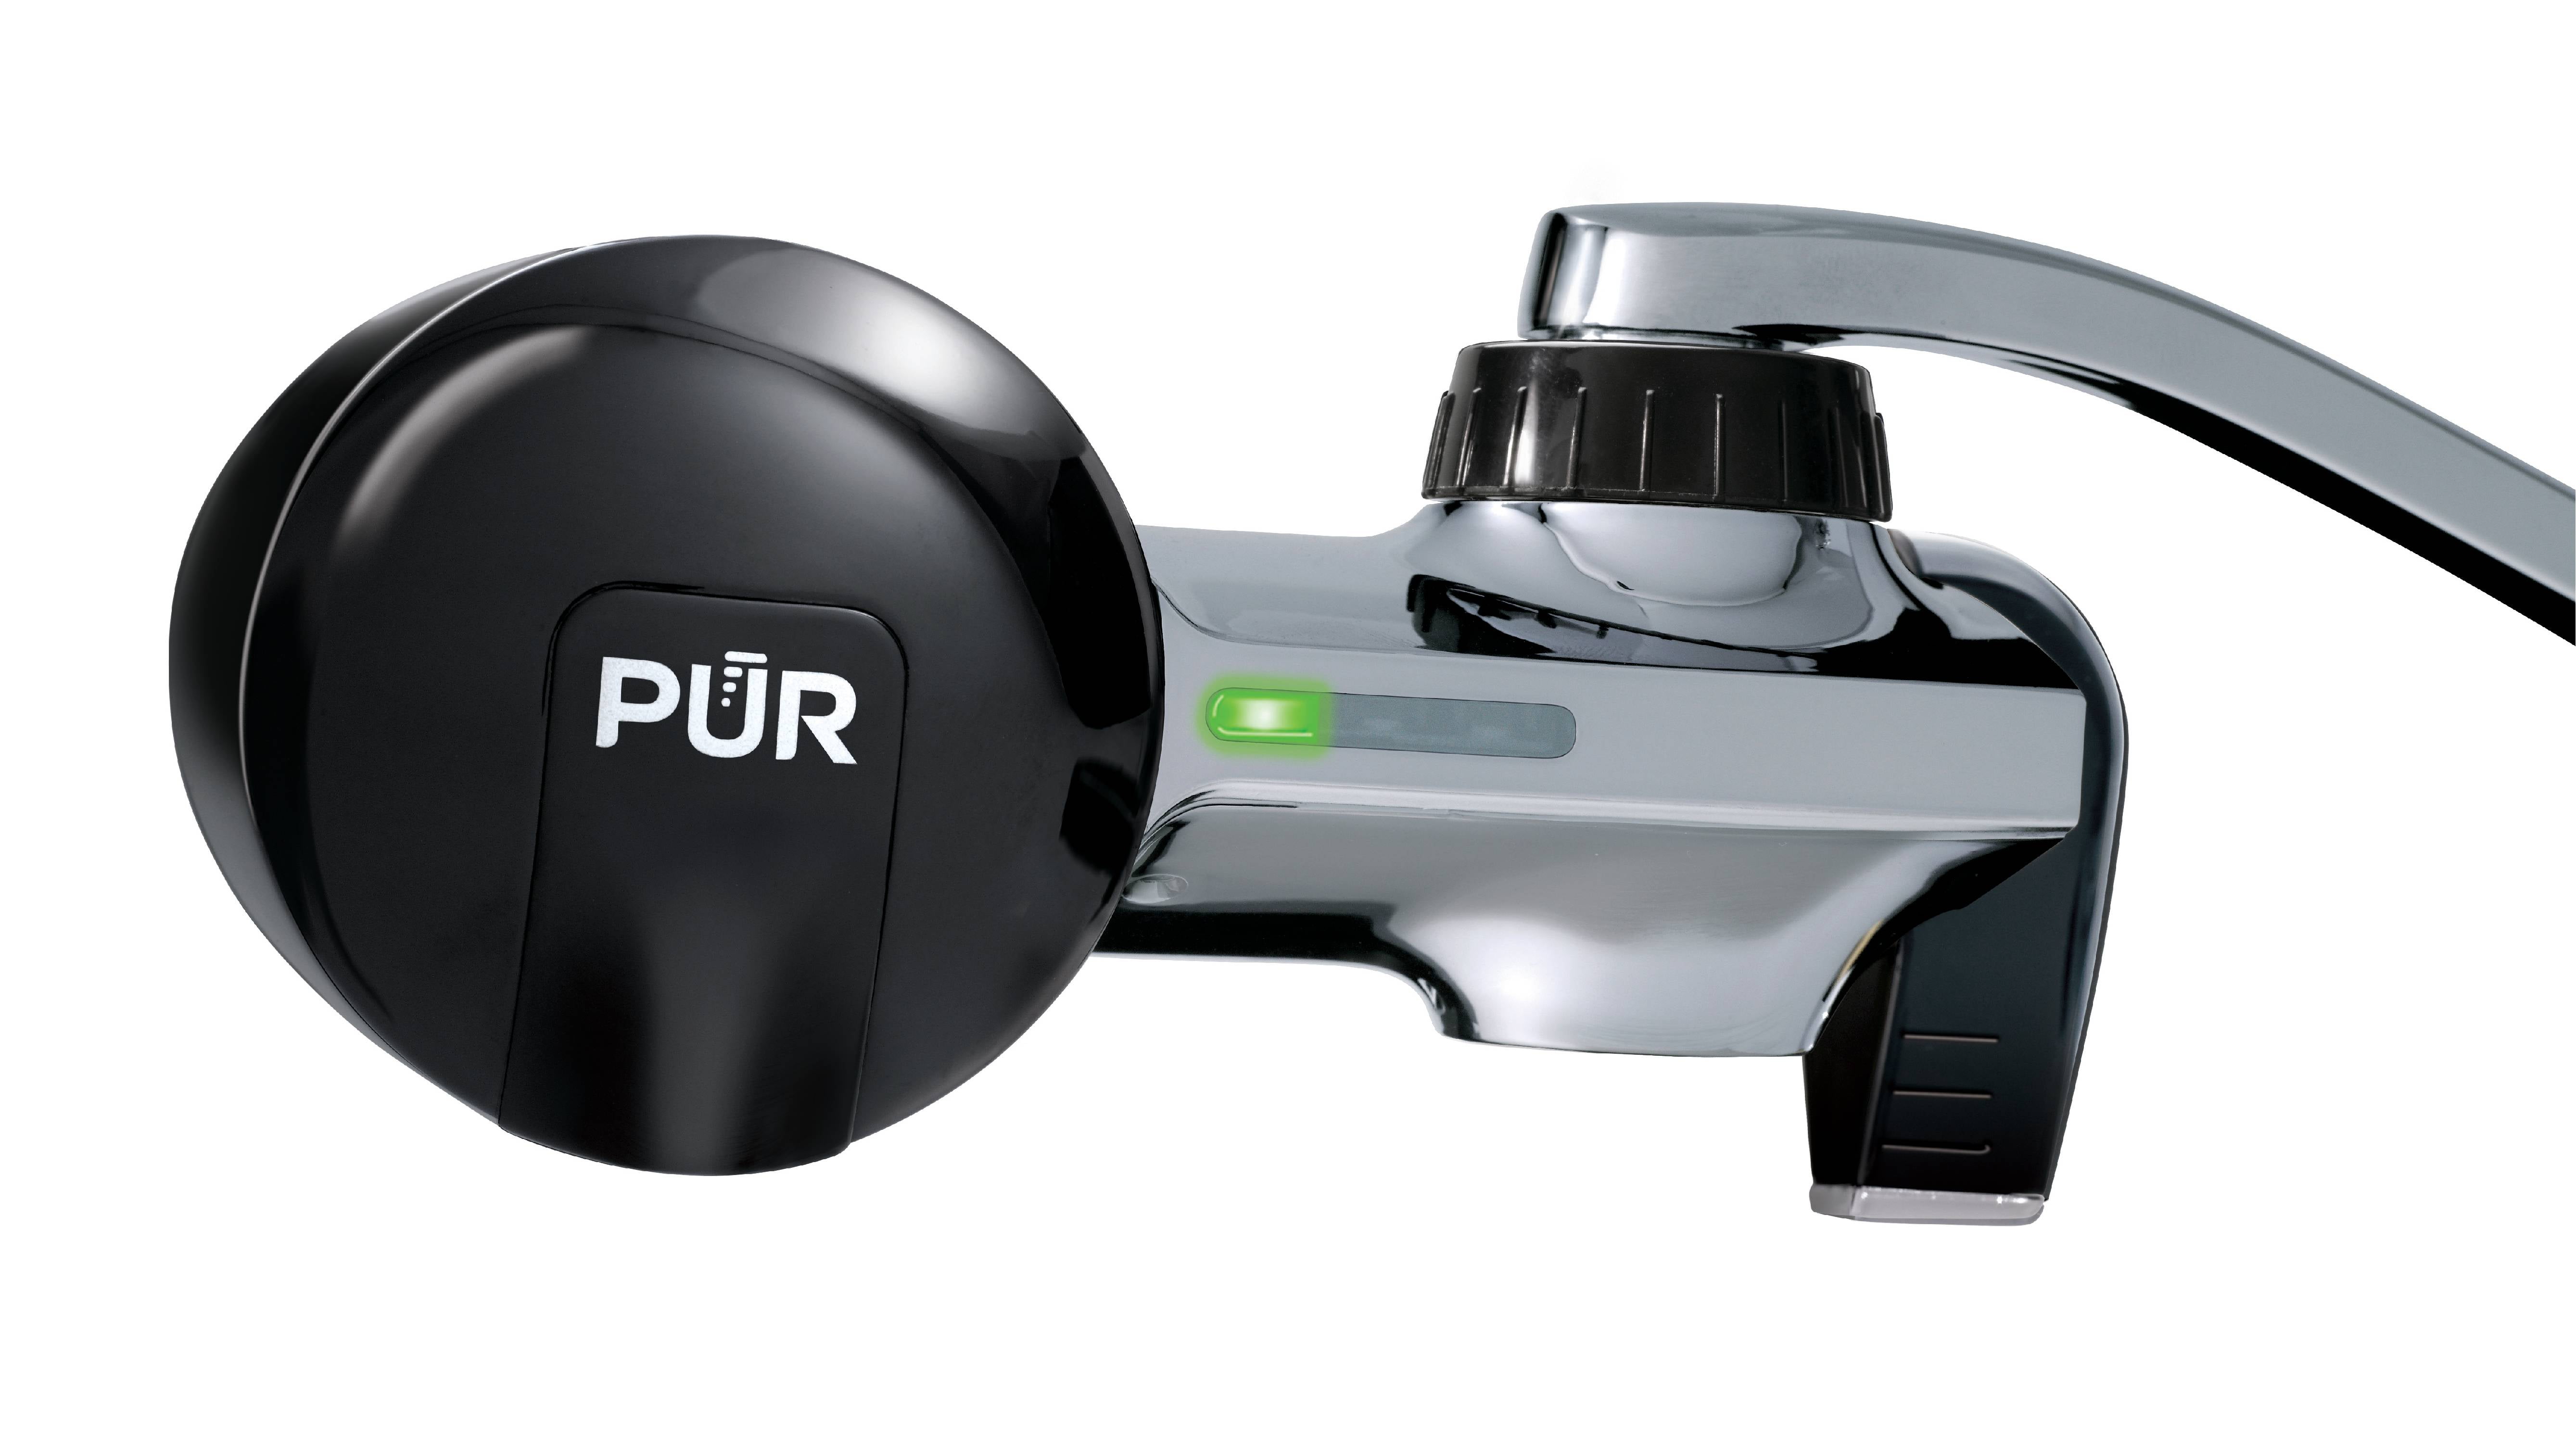 PUR Plus Faucet Mount Water Filtration System, Black & Chrome, PFM200B